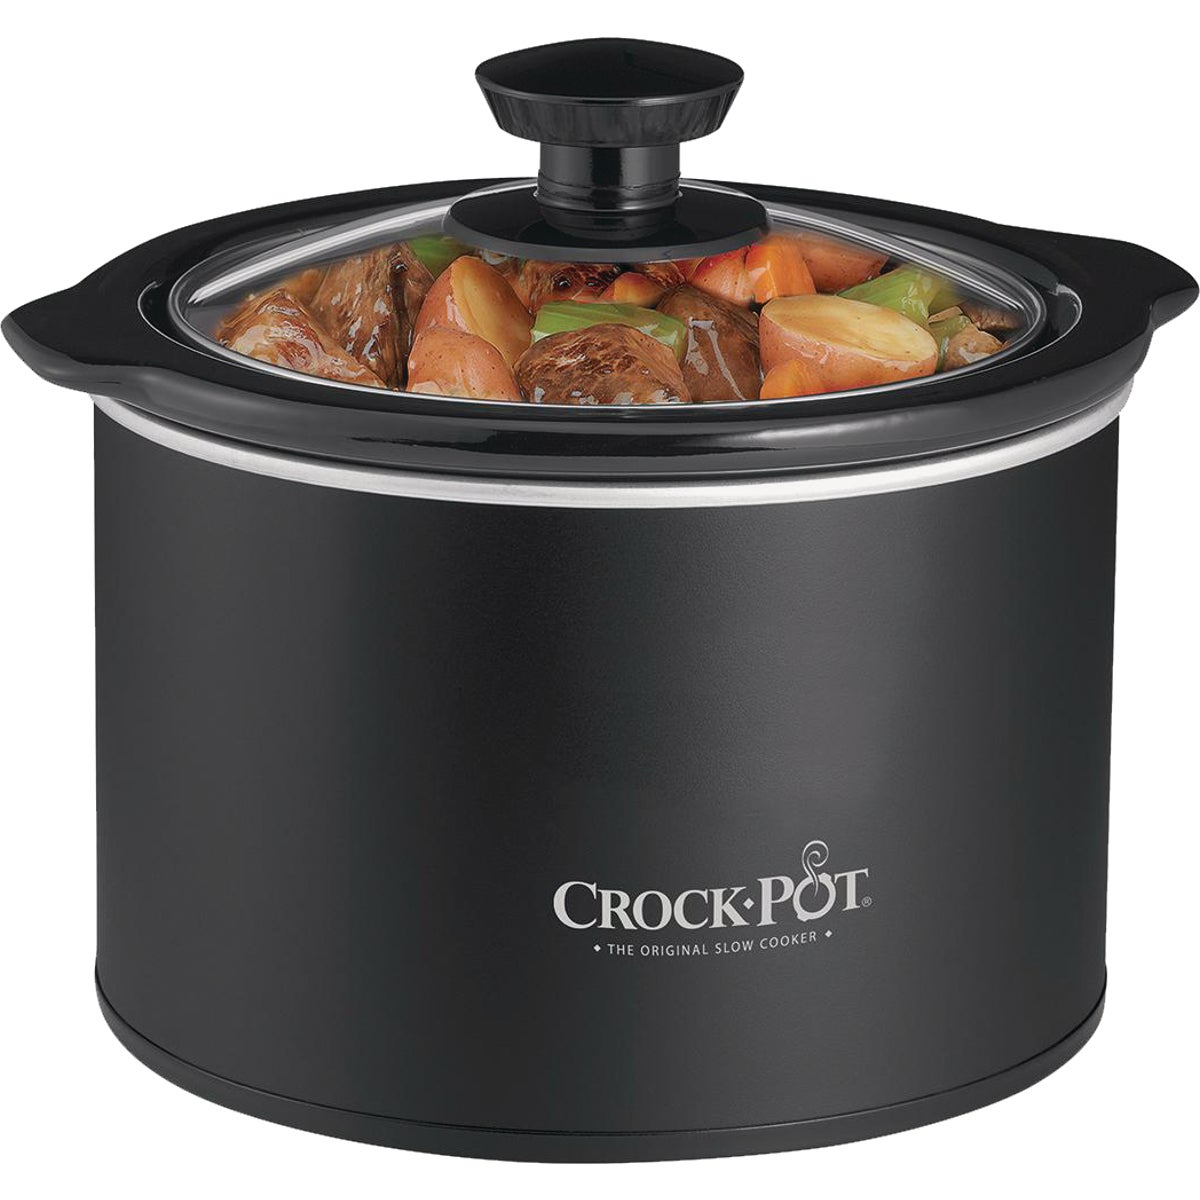 Crock-Pot 1.5 Qt. Black No Dial Round Manual Slow Cooker